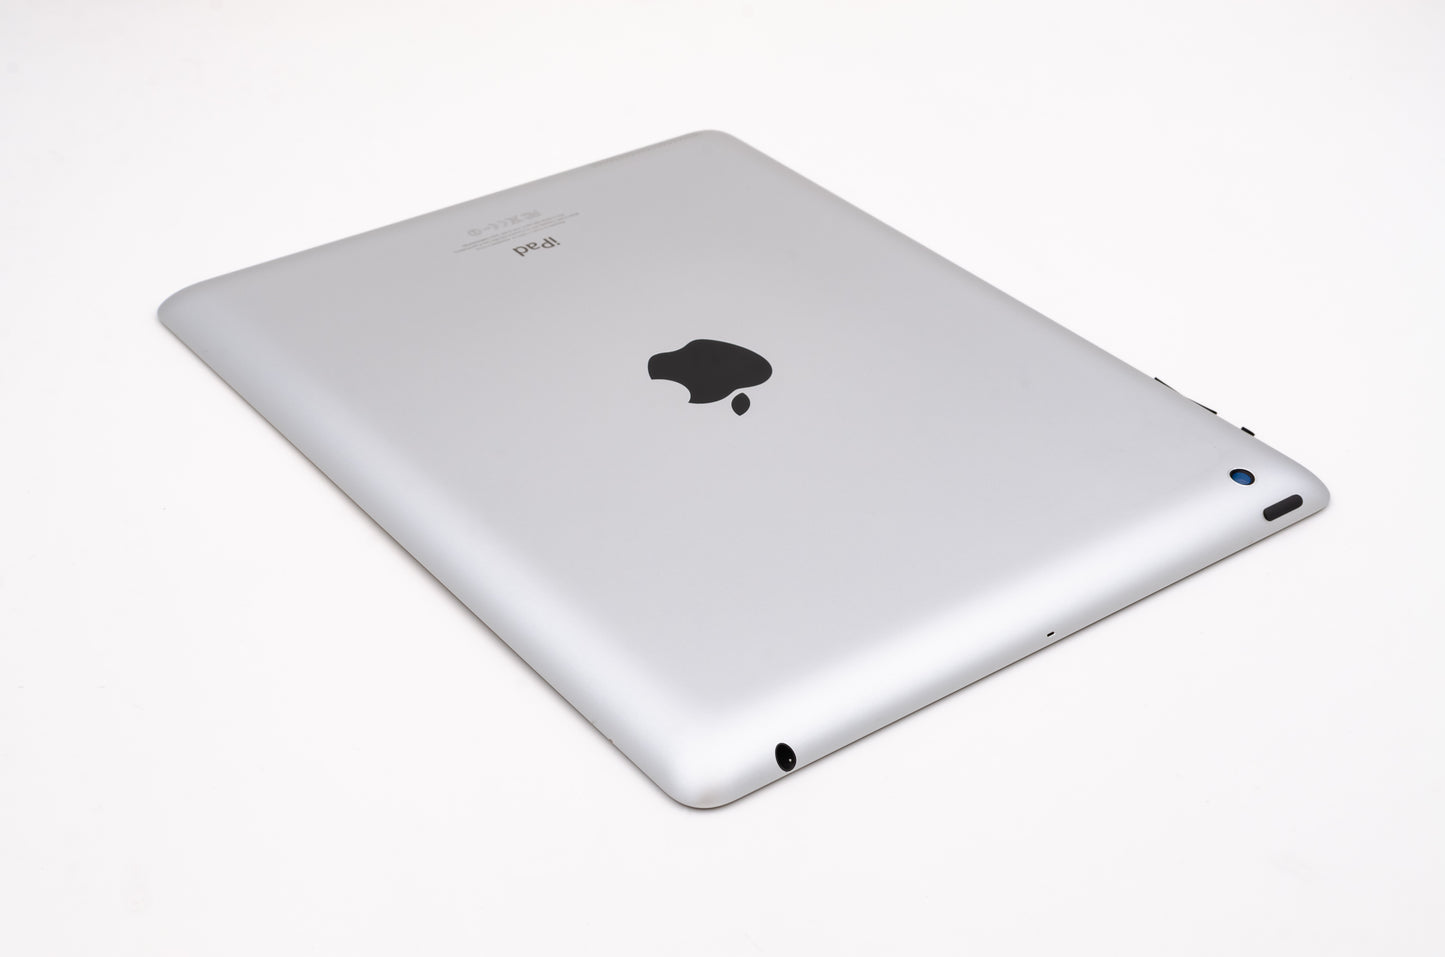 apple-2012-9.7-inch-ipad-4-a1458-silver/black-4